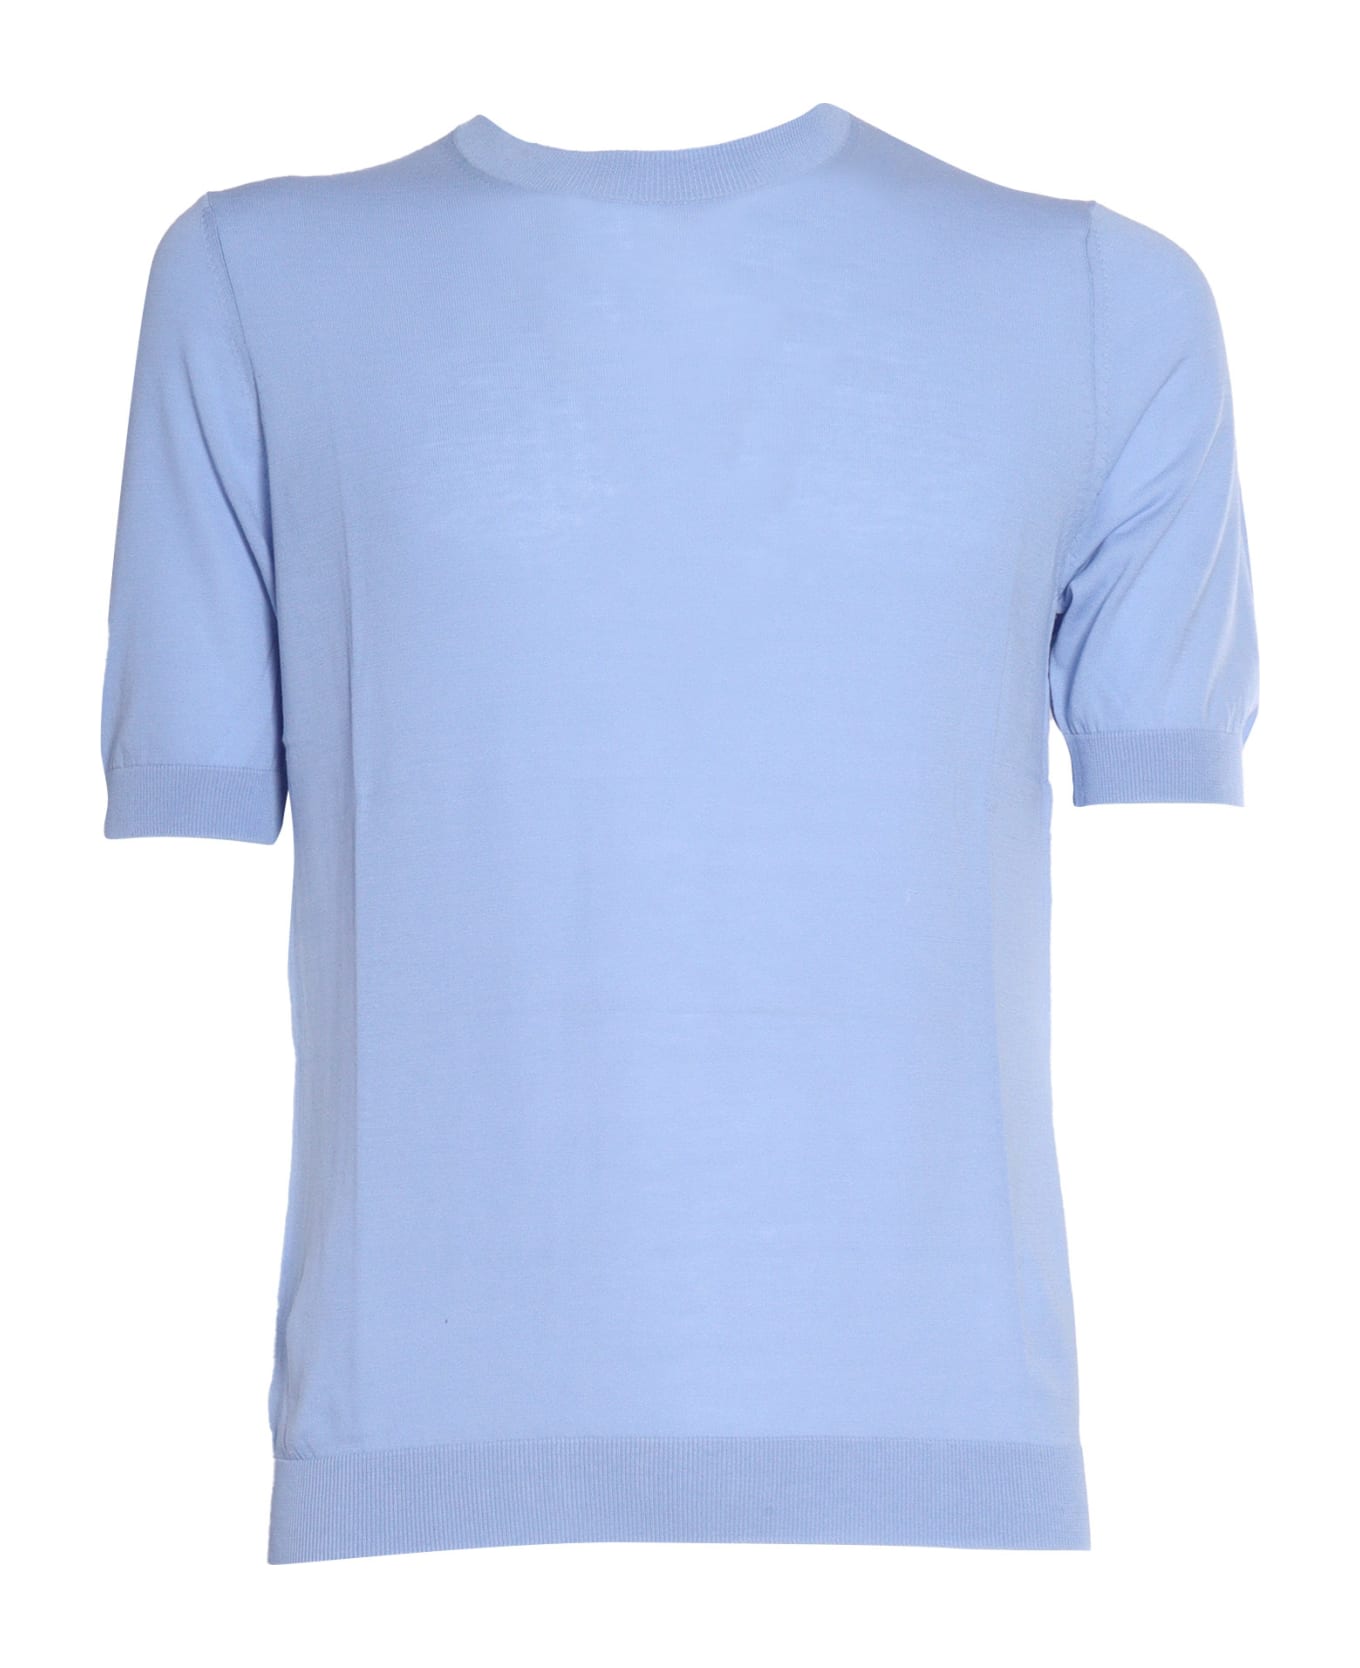 Ballantyne Light Blue Short-sleeved Shirt - BLUE シャツ